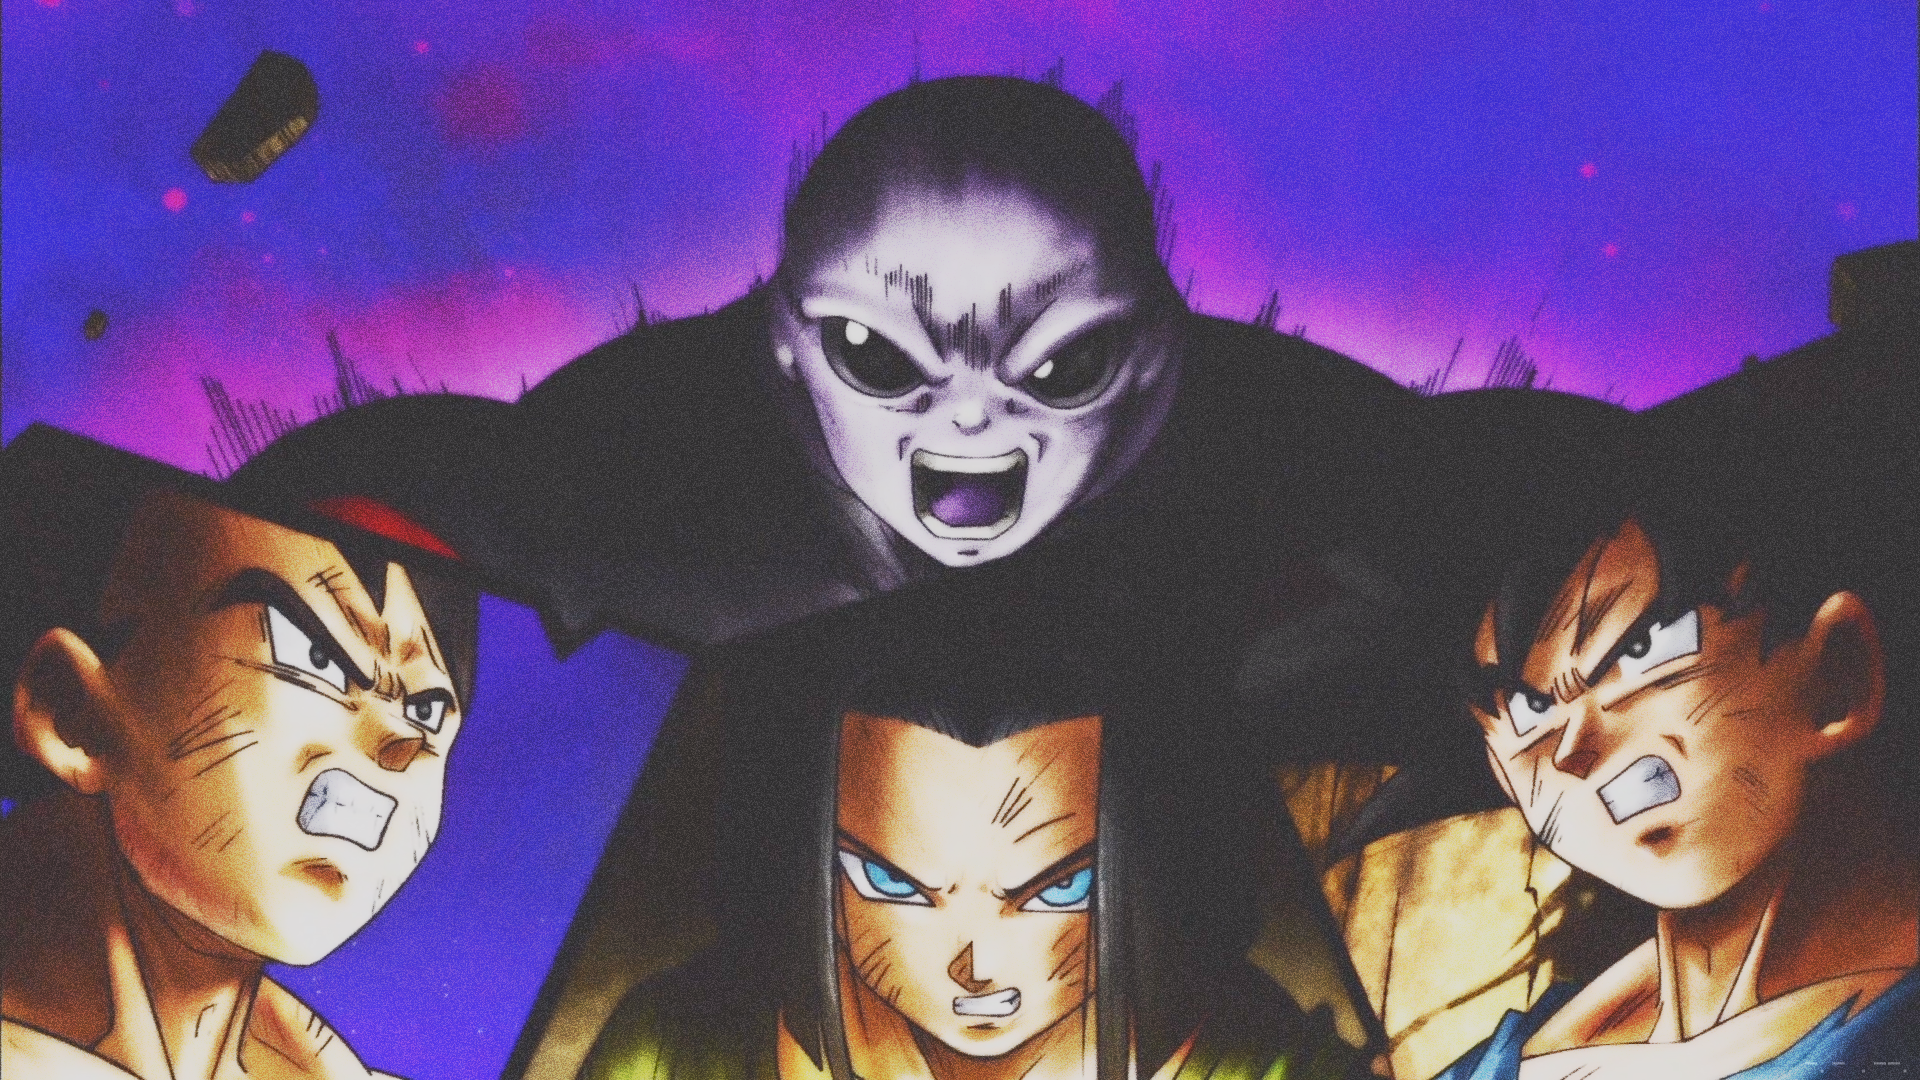 Anime 1920x1080 Dragon Ball Son Goku Vegeta Android 17 saiyan Dragon Ball Super jiren